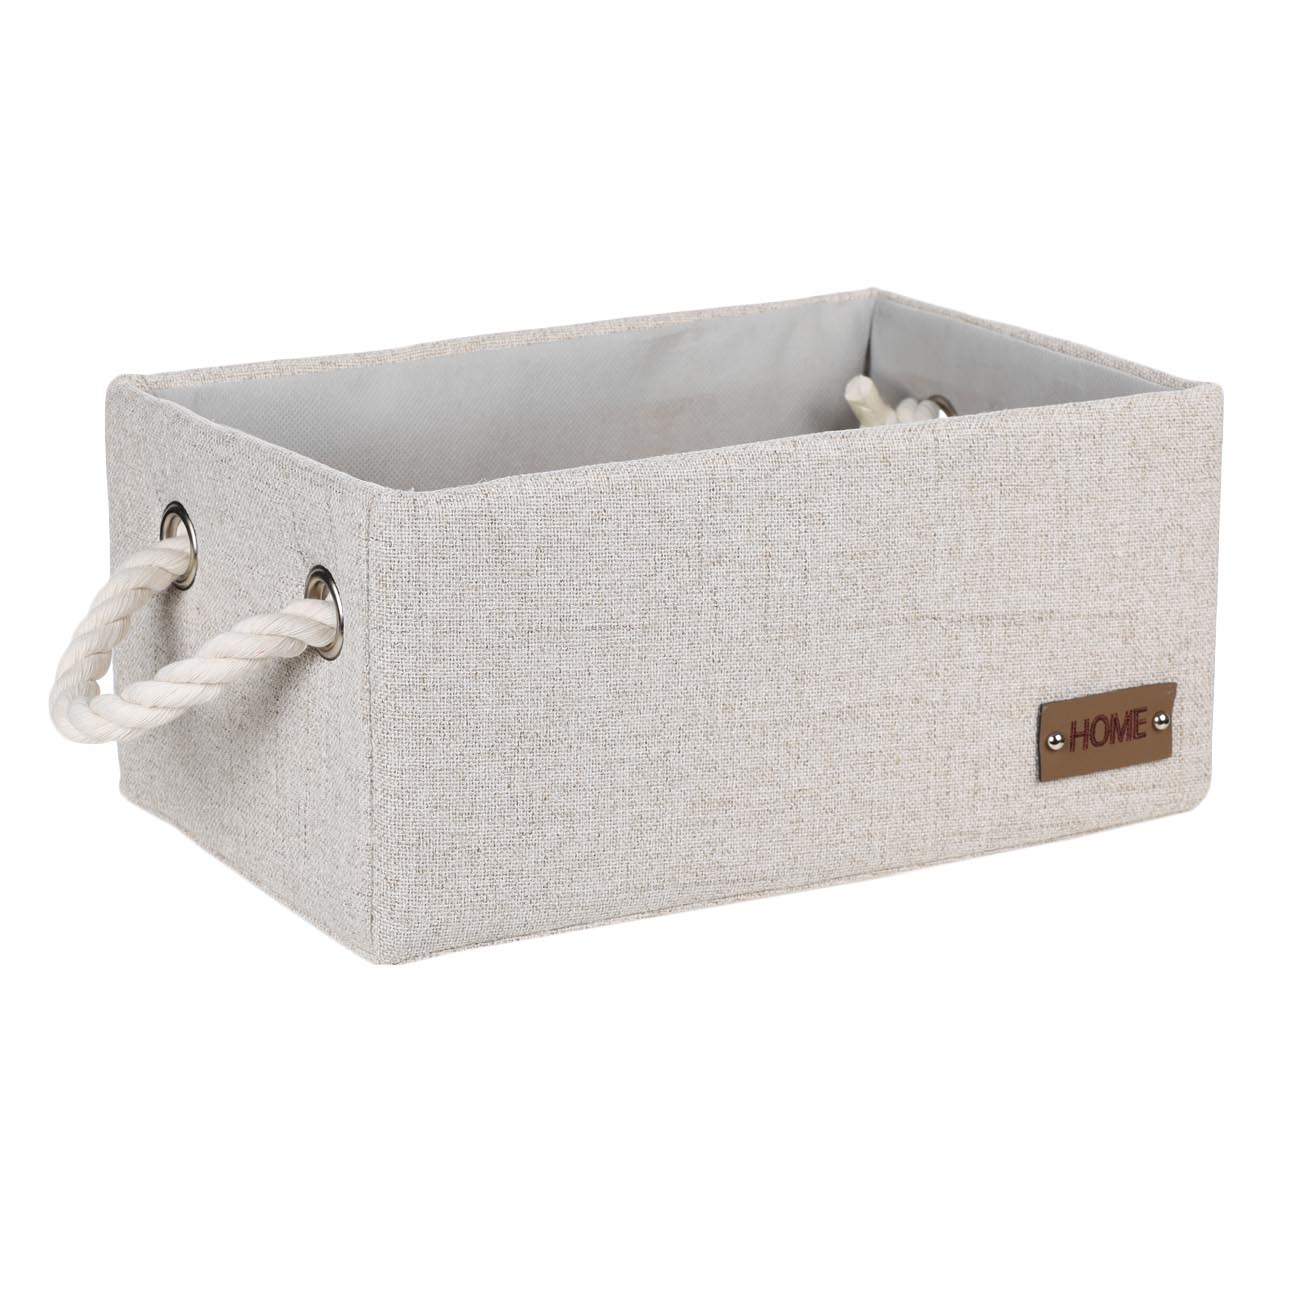 Storage basket, 28x18x13 cm, with handles, polyester, rectangular, Beige, Everyday изображение № 2